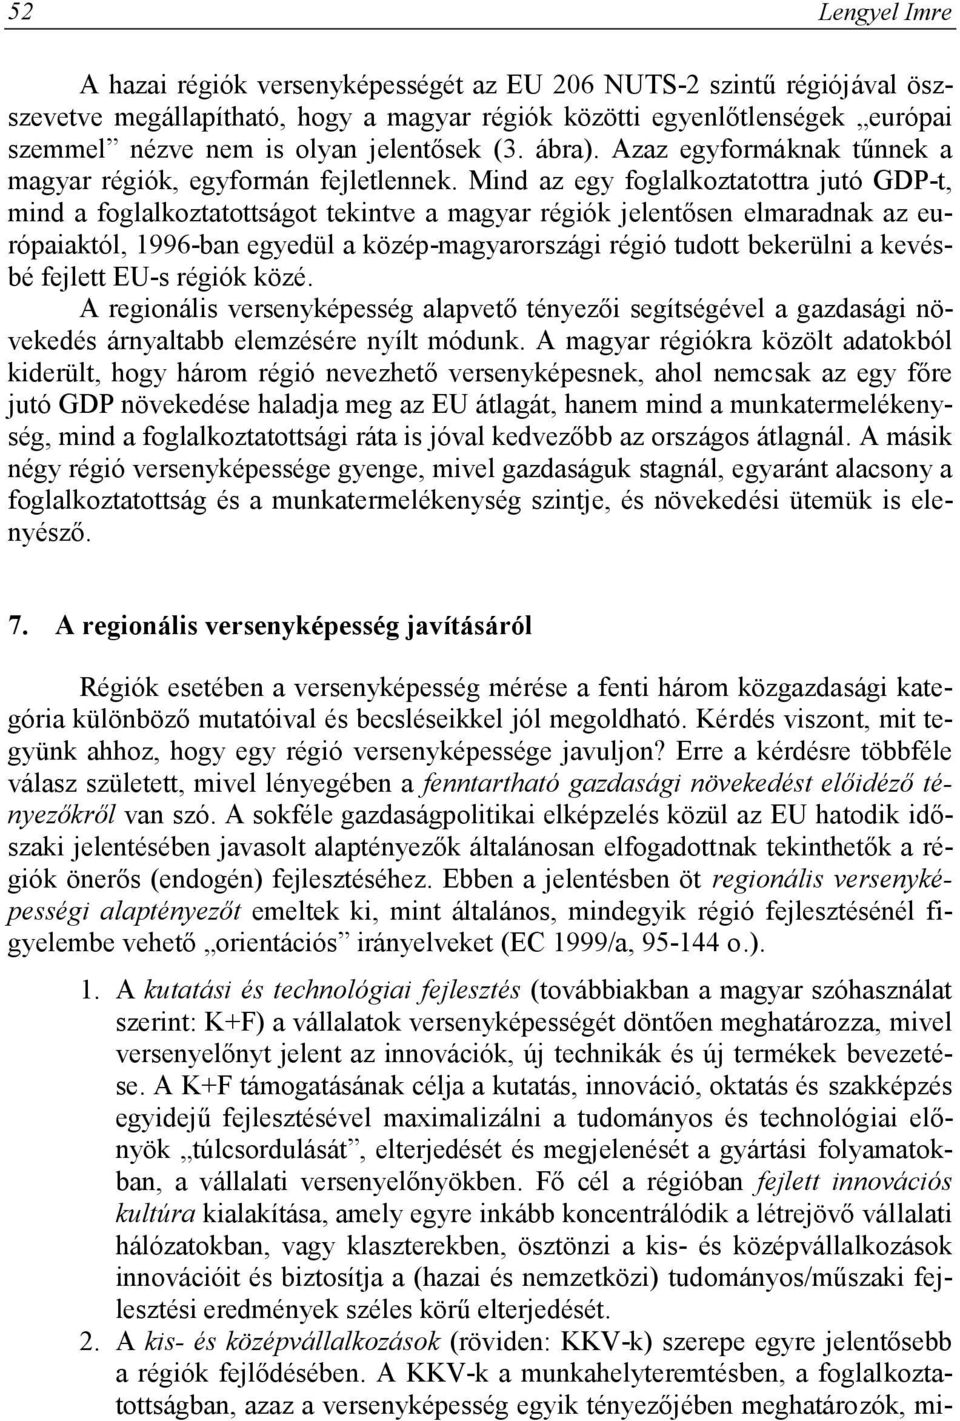 Mind az egy foglalkoztatottra jutó GDP-t, mind a foglalkoztatottságot tekintve a magyar régiók jelentősen elmaradnak az európaiaktól, 1996-ban egyedül a közép-magyarországi régió tudott bekerülni a